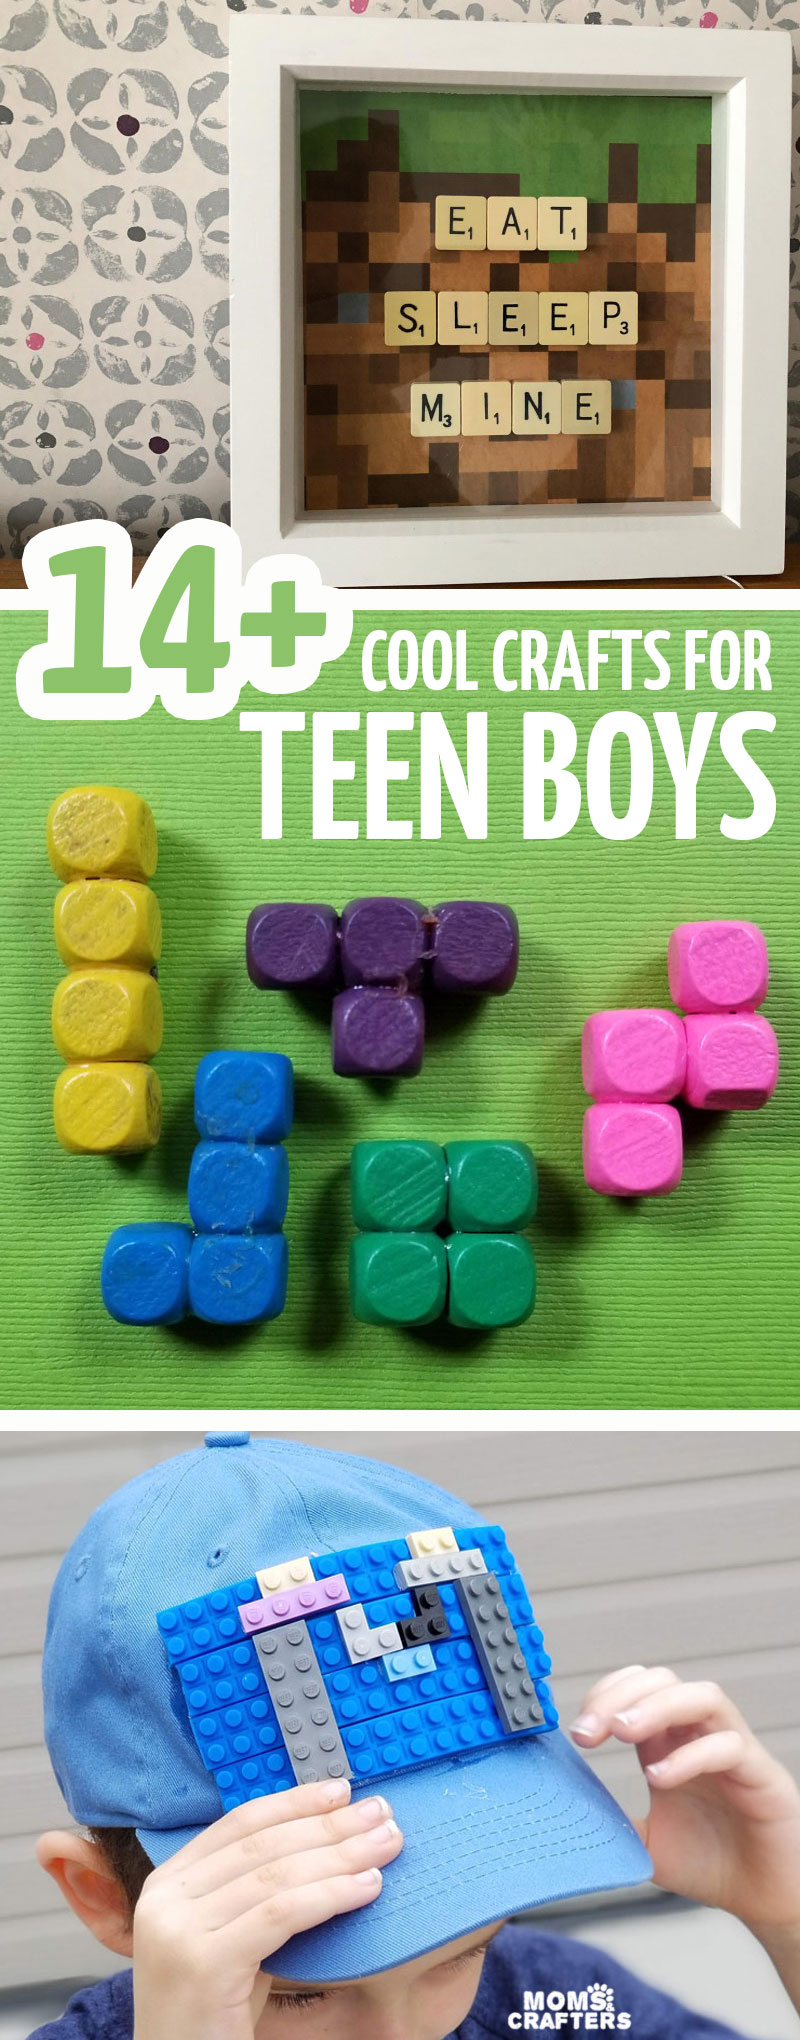 https://www.momsandcrafters.com/wp-content/uploads/2018/10/CRAFTS-FOR-teen-boys-v.jpg.webp